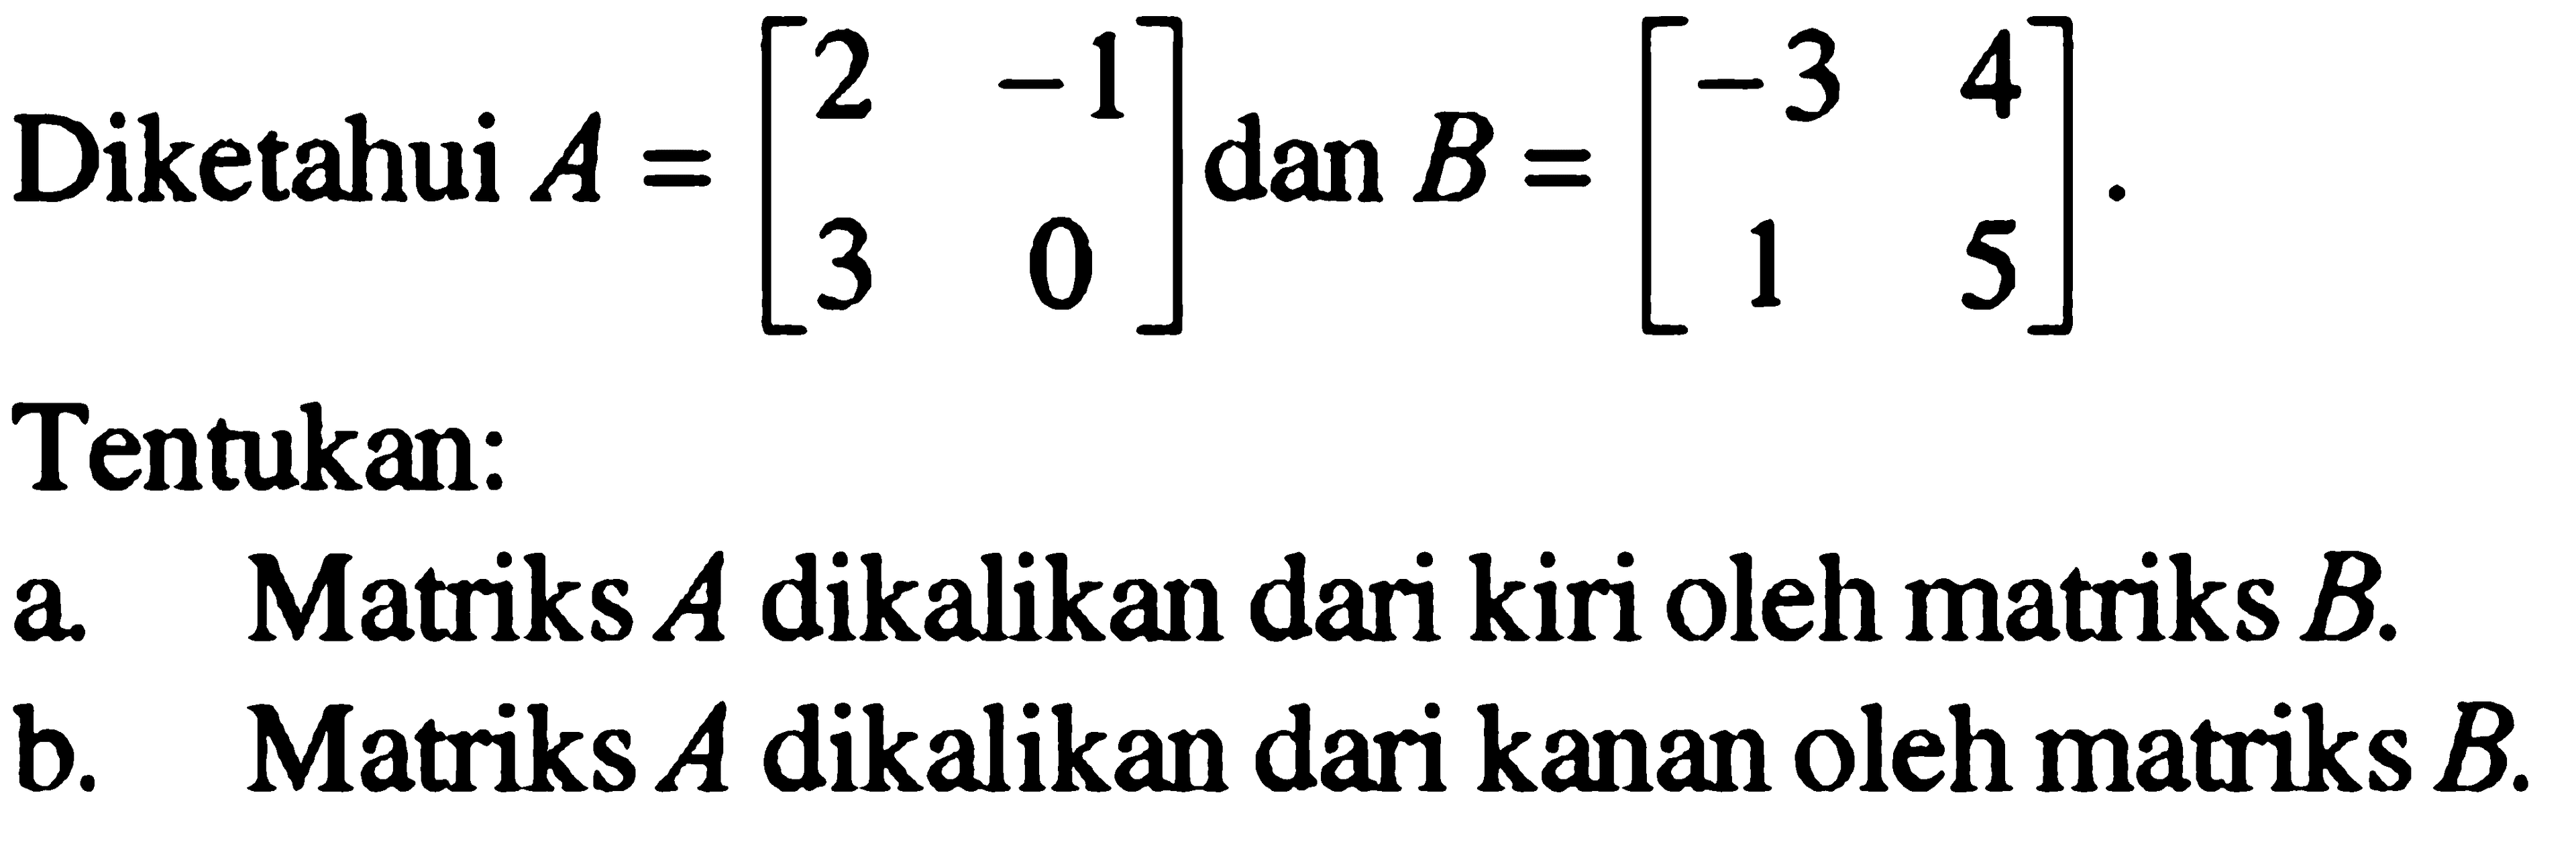 Diketahui A=[2 -1 3 0] dan B=[-3 4 1 5]. Tentukan: a. Matriks A dikalikan dari kiri oleh matriks B. b. Matriks A dikalikan dari kanan oleh matriks B.